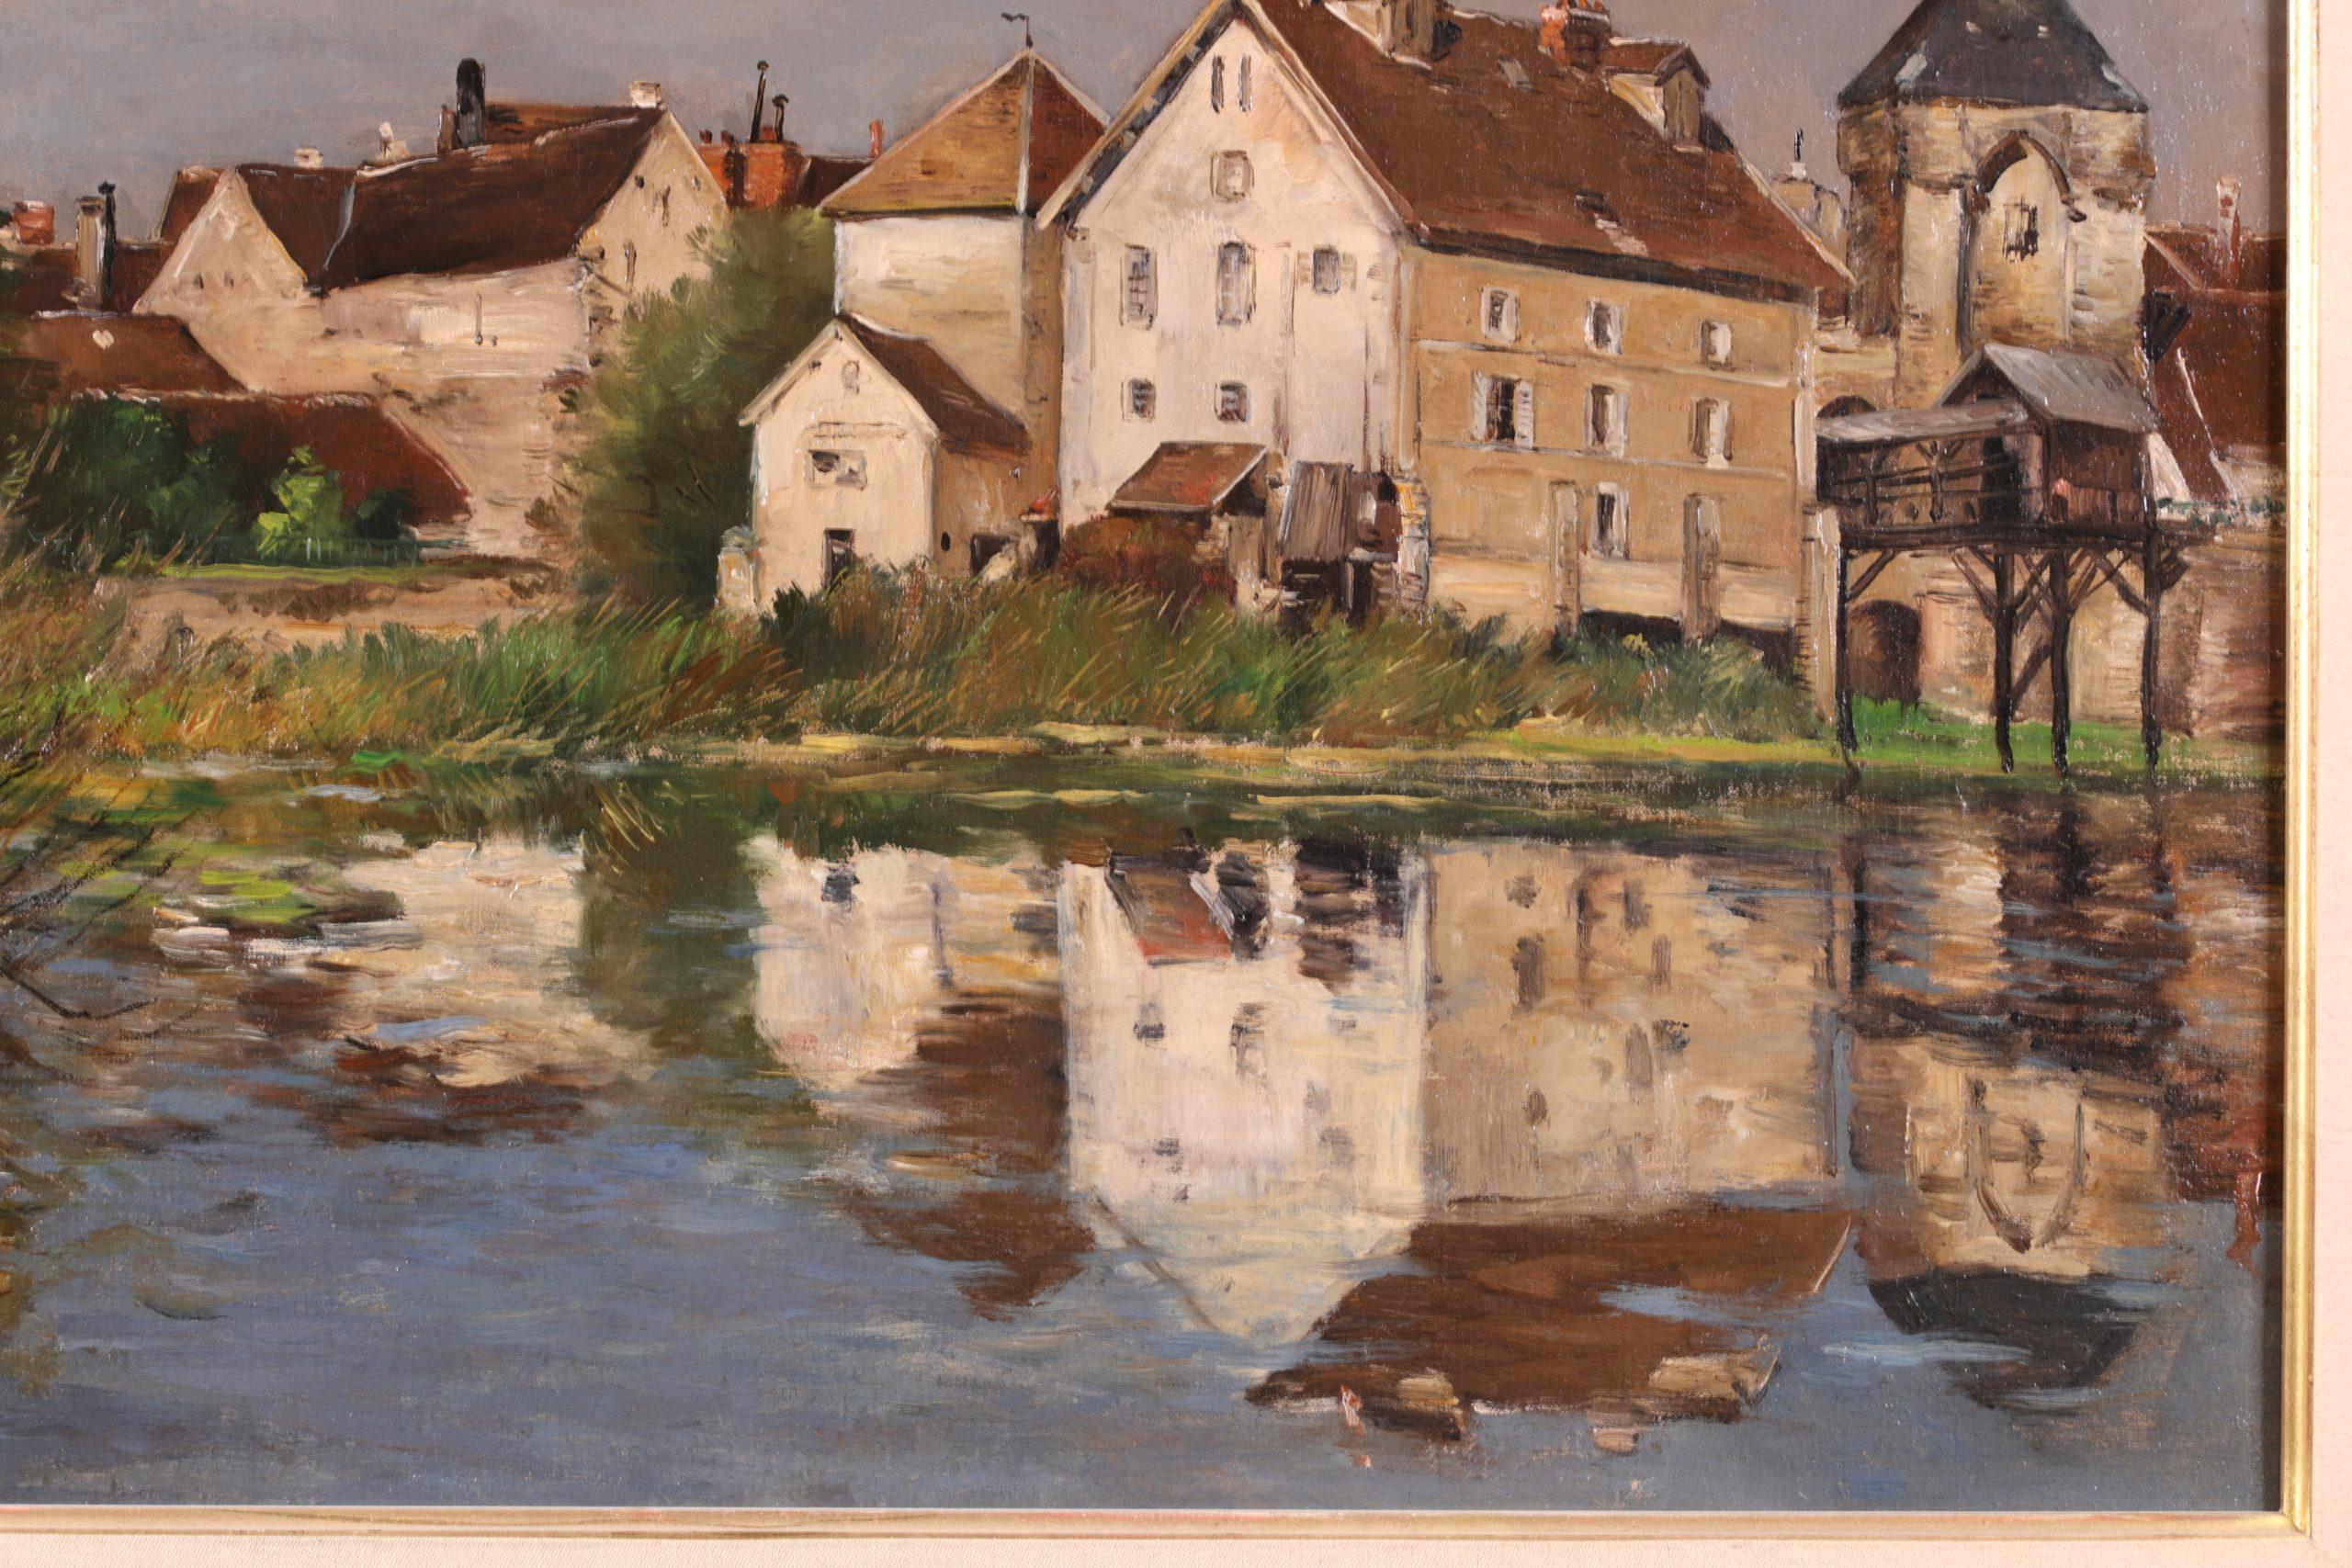 Signierte Öl auf Leinwand Landschaft circa 1890 von Französisch impressionistischen Maler Jean Baptiste Antoine Guillemet. Das Werk zeigt eine Ansicht von Moret-sur-Loing im Nordosten Frankreichs vom Ufer des Flusses Loing aus. Die Gebäude der Stadt